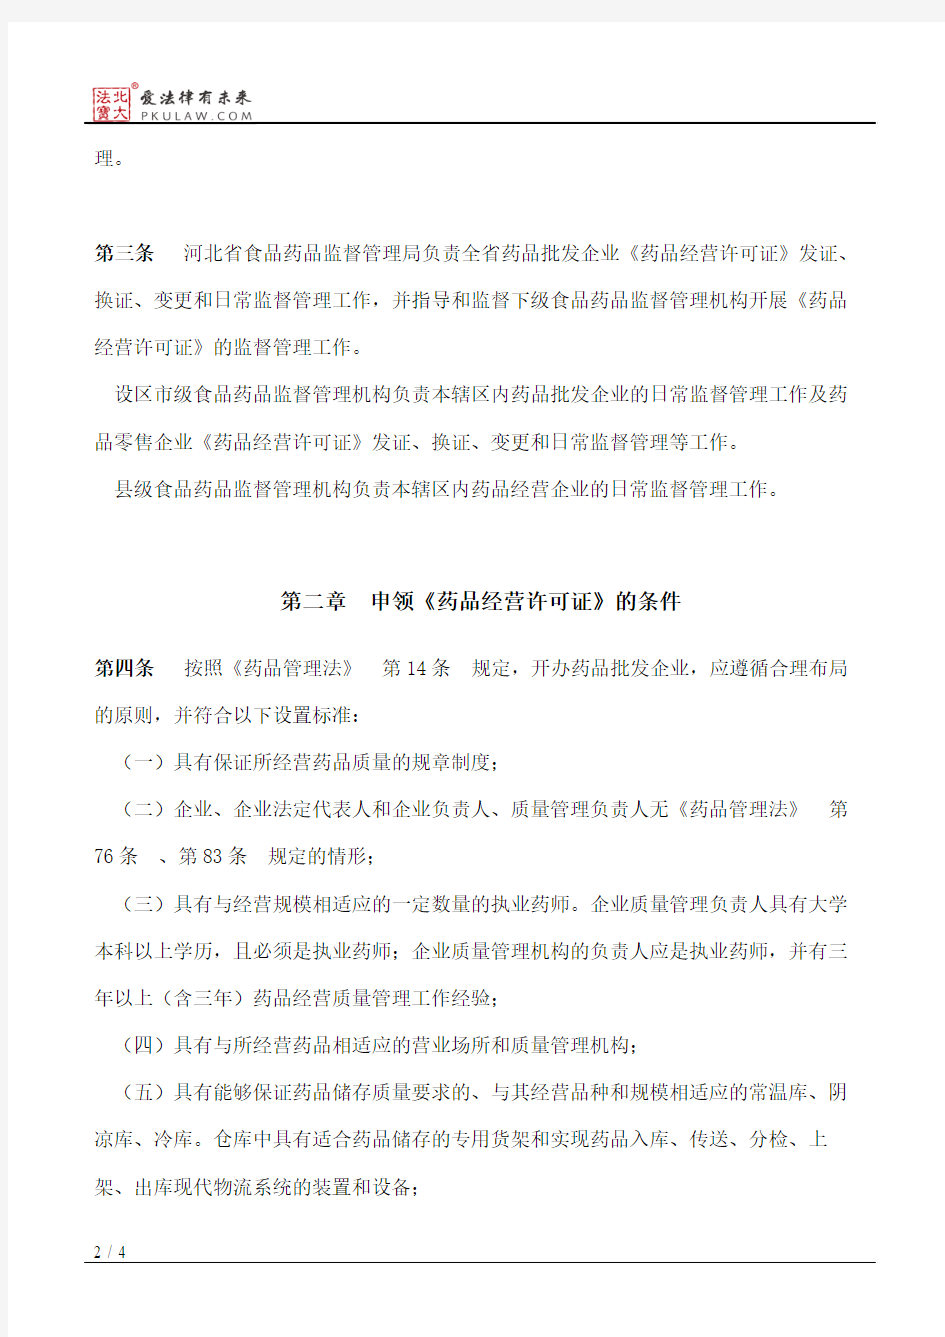 河北省药品经营许可证管理办法实施细则(试行)